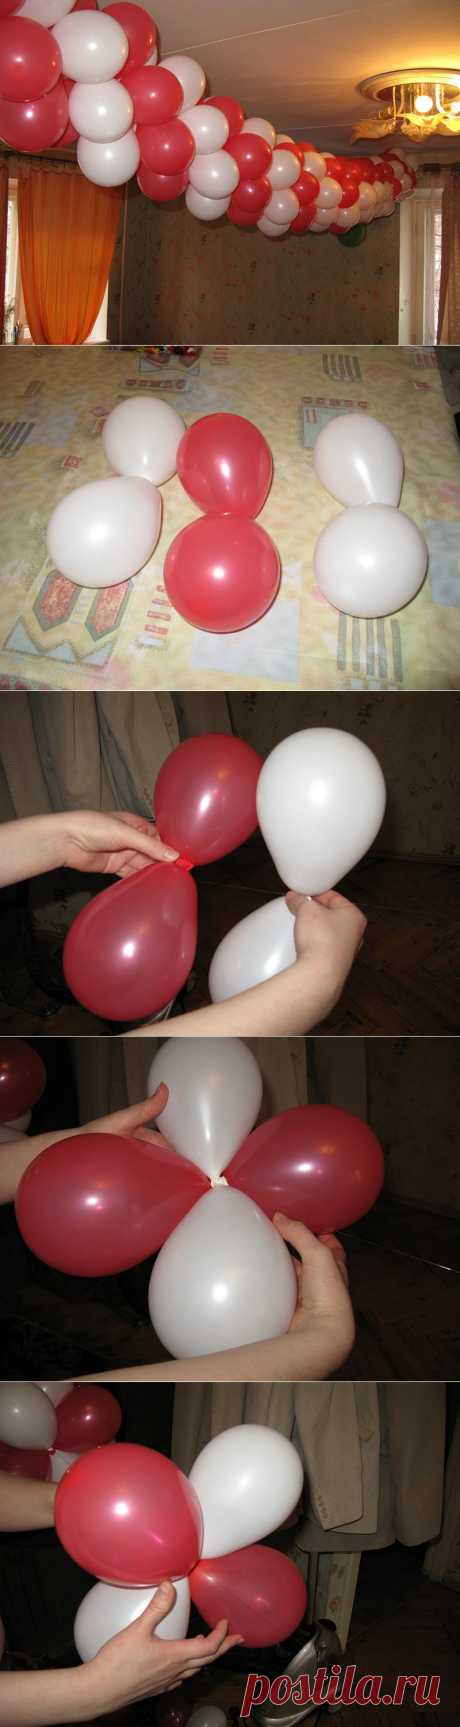 Как сделать гирлянду из воздушных шаров / герлянды из шаров сделать самому